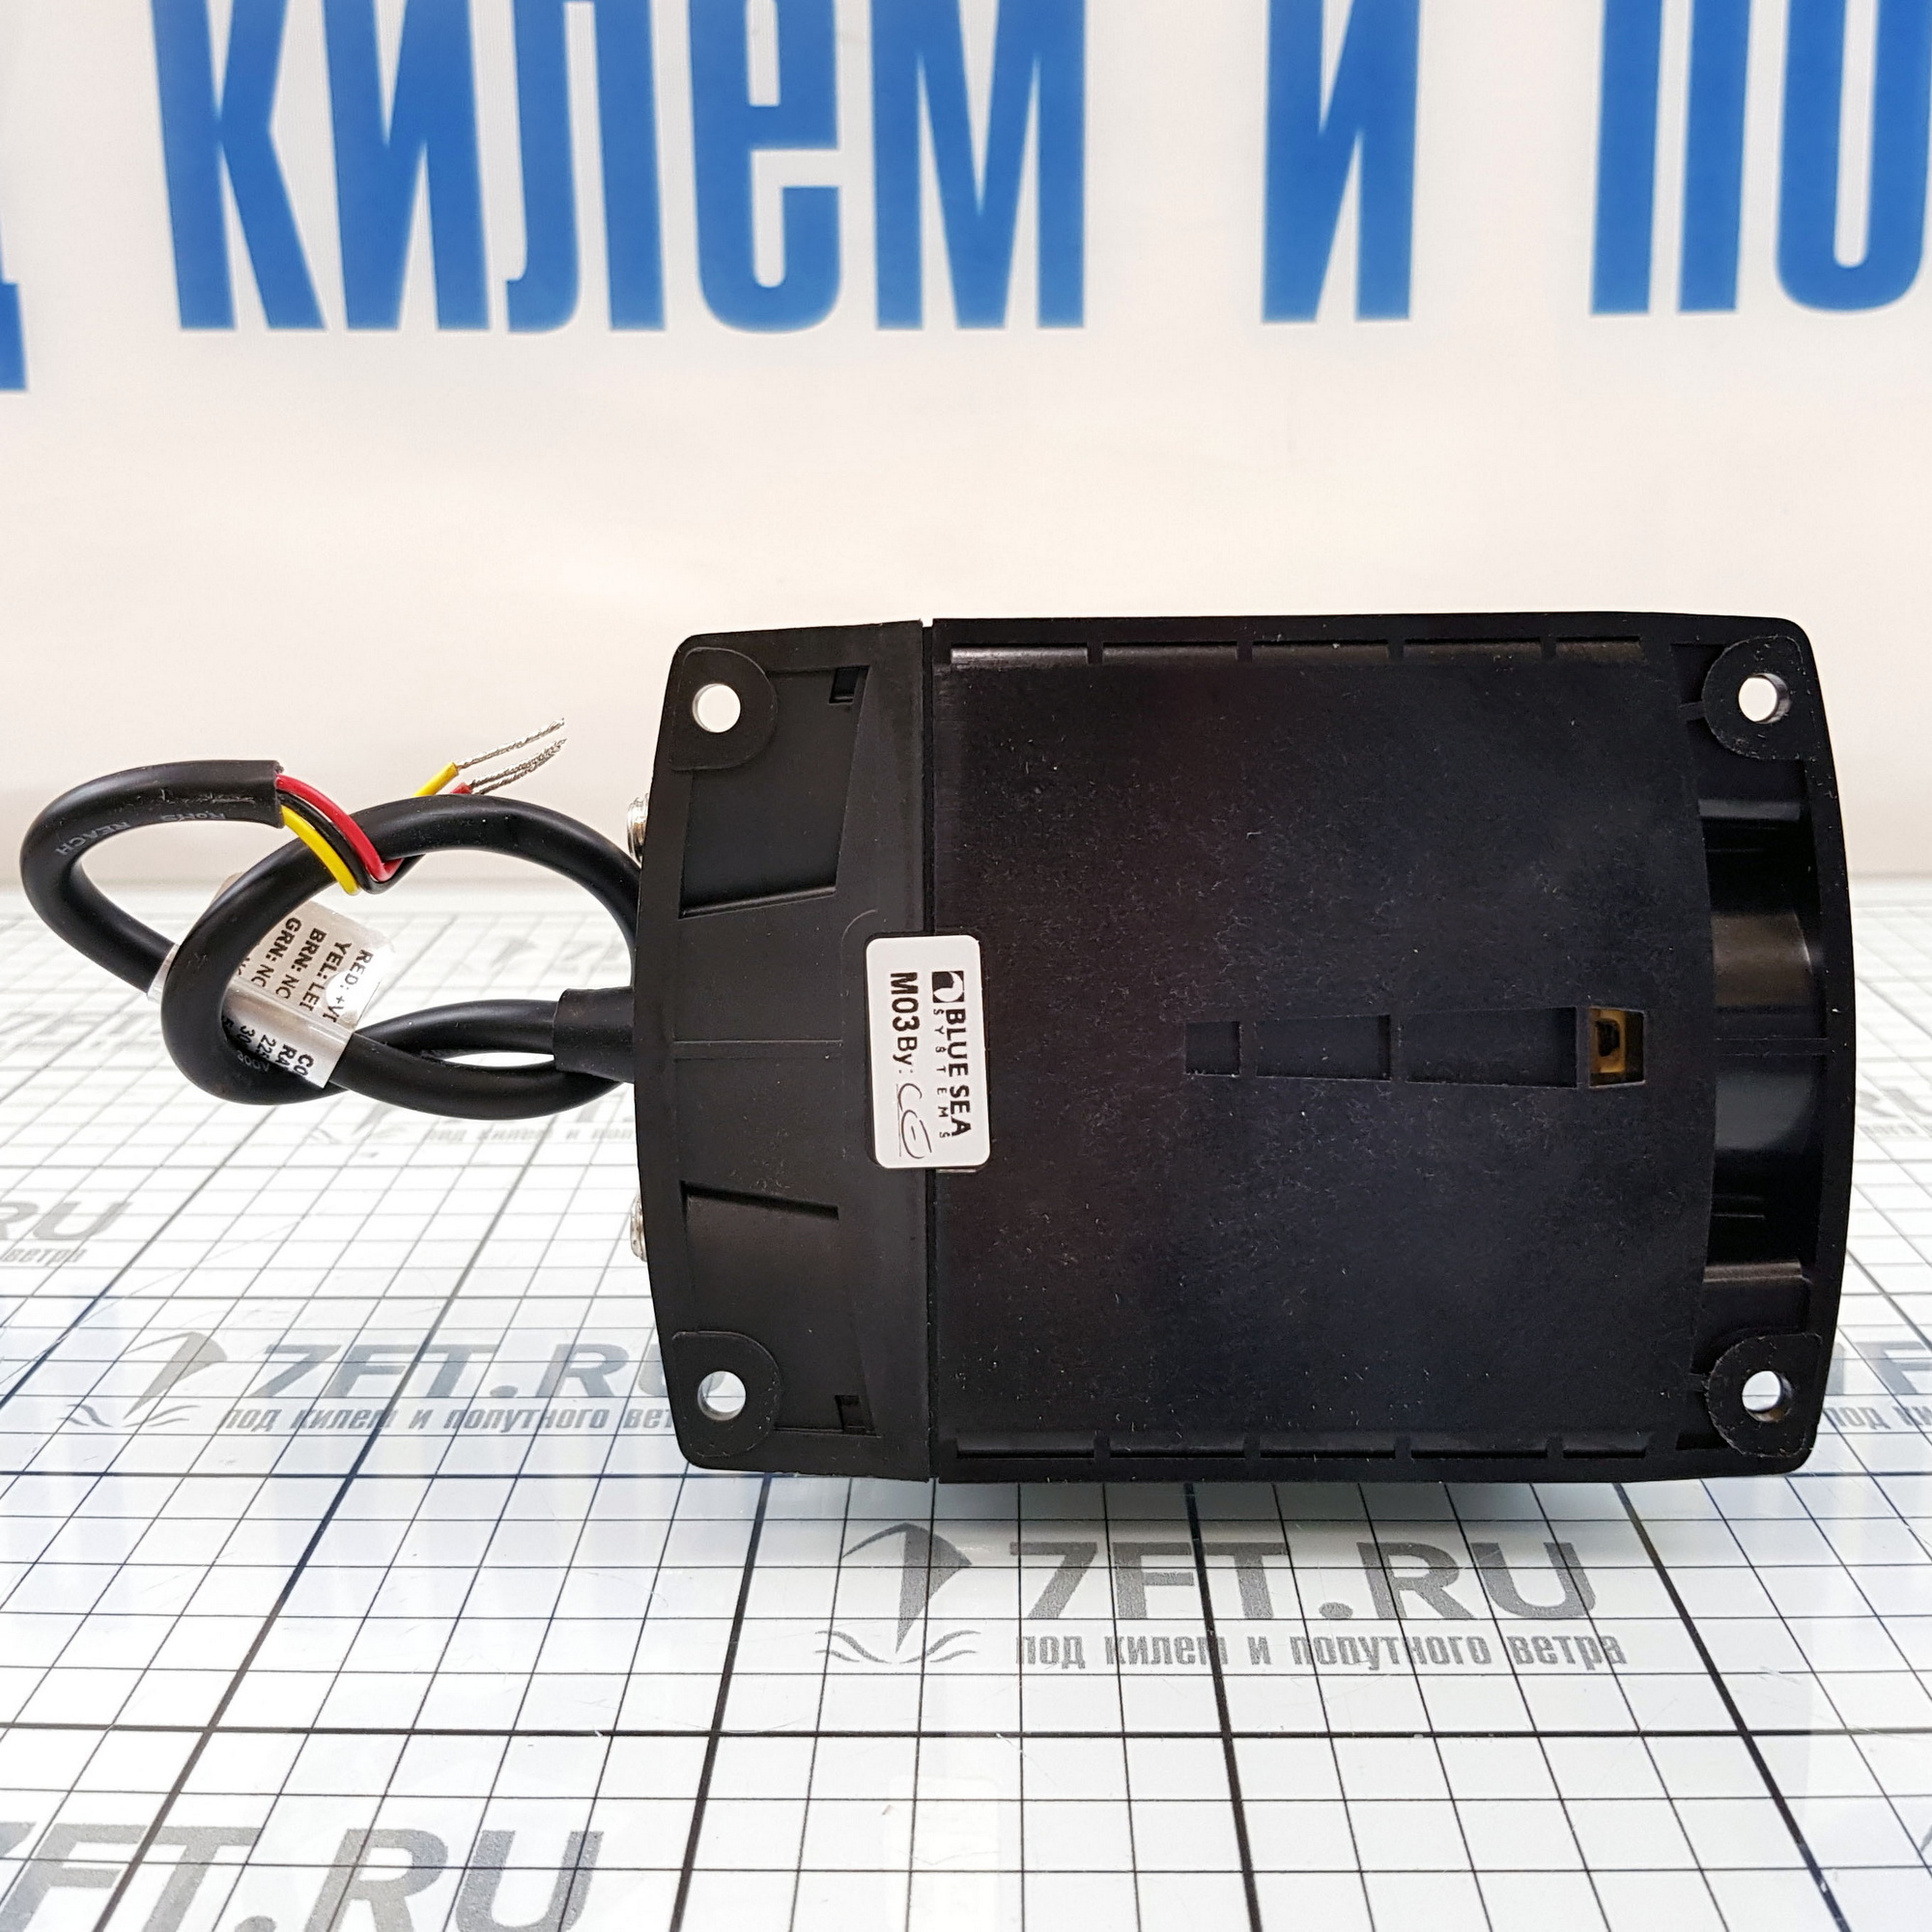 Купить Автоматический переключатель АКБ Blue Sea ML-RBS 7713 12В 500А с дистанционным ручным управлением 7ft.ru в интернет магазине Семь Футов